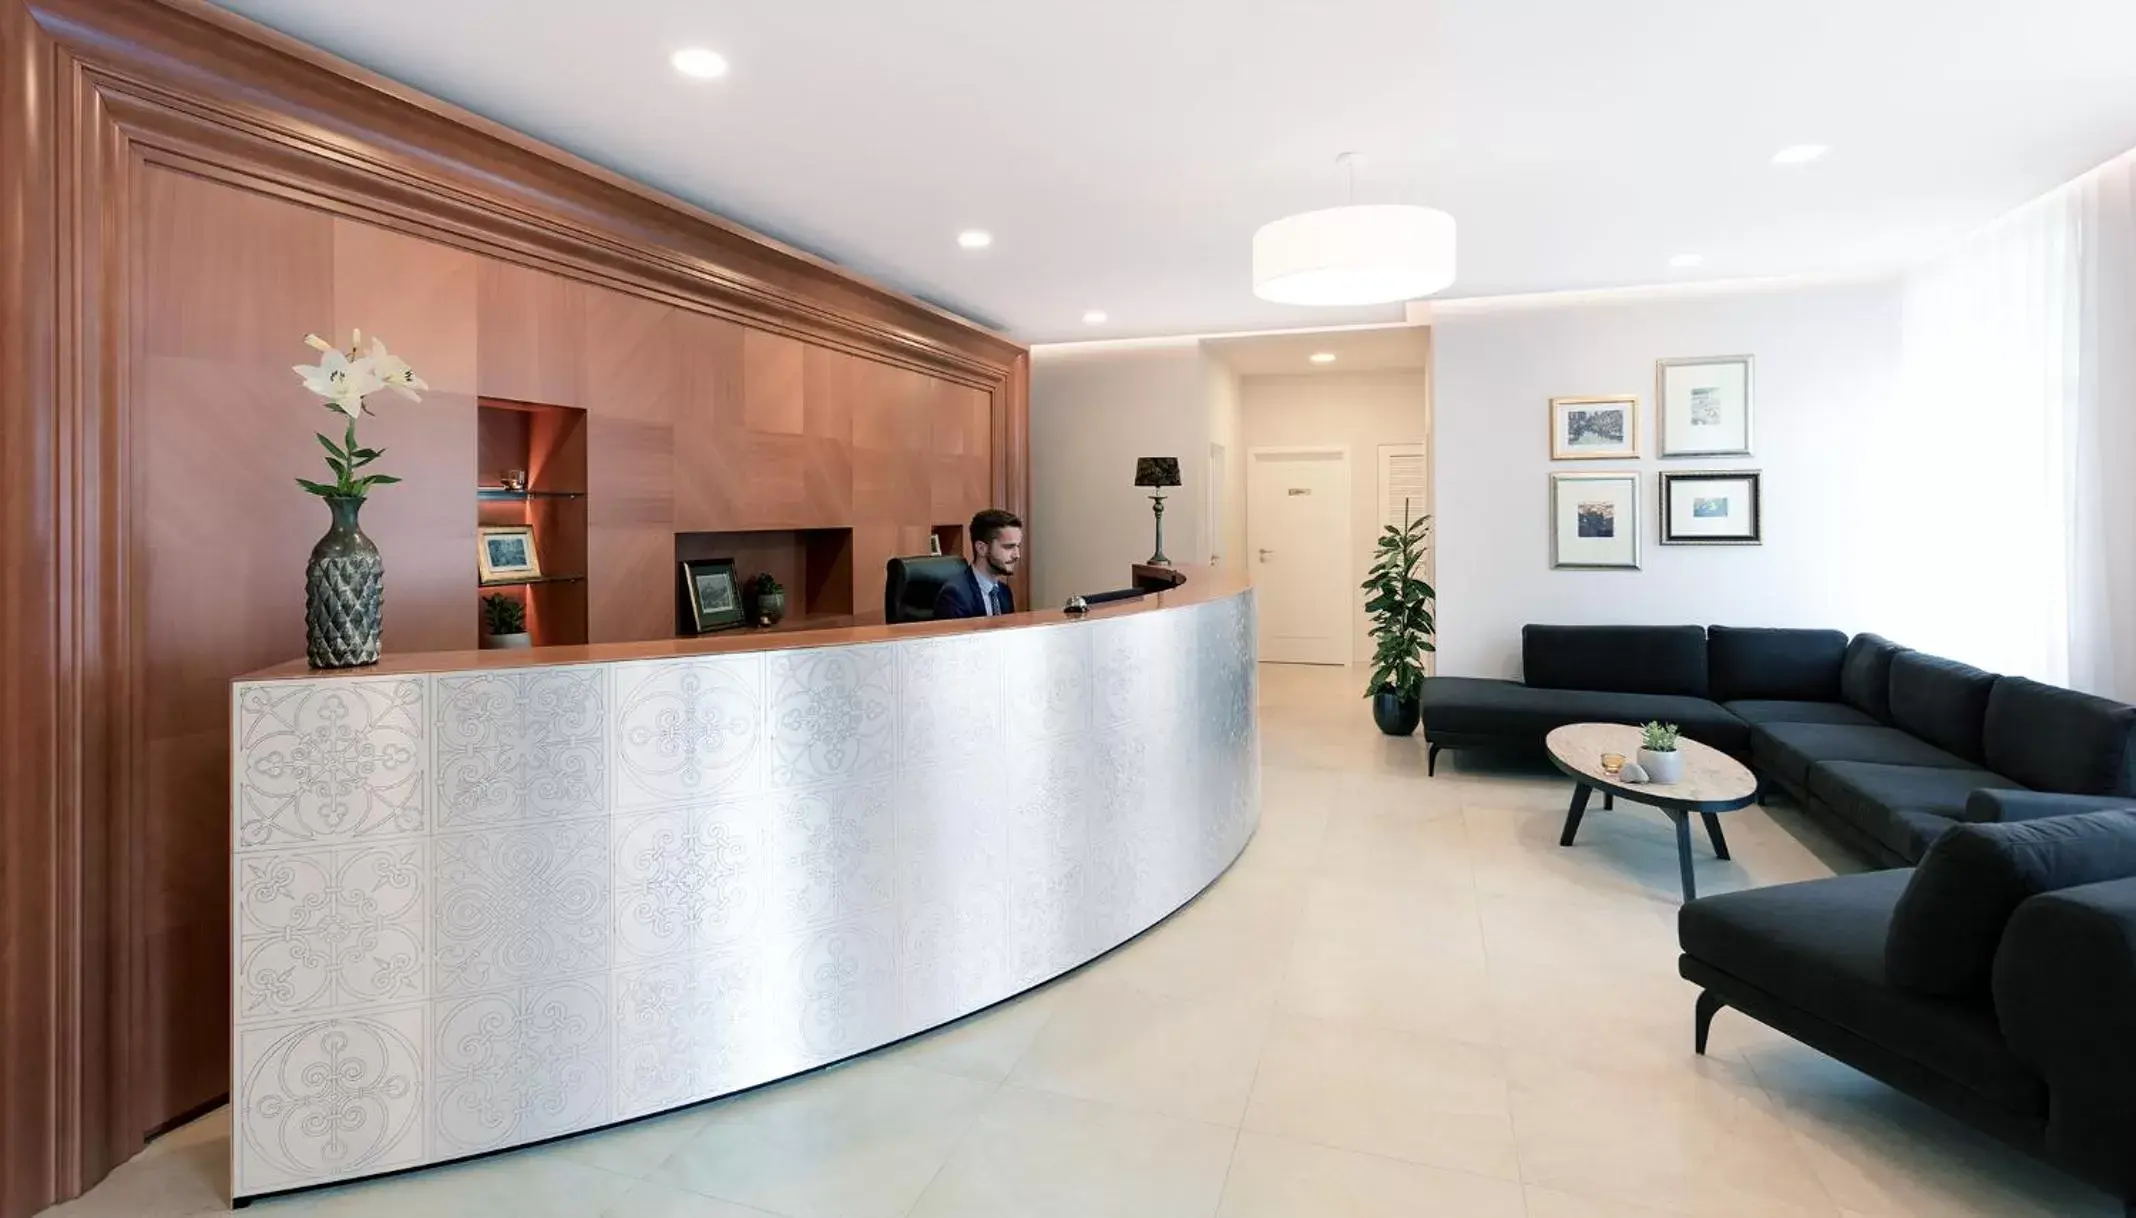 Lobby or reception, Lobby/Reception in Hotel Schwaiger